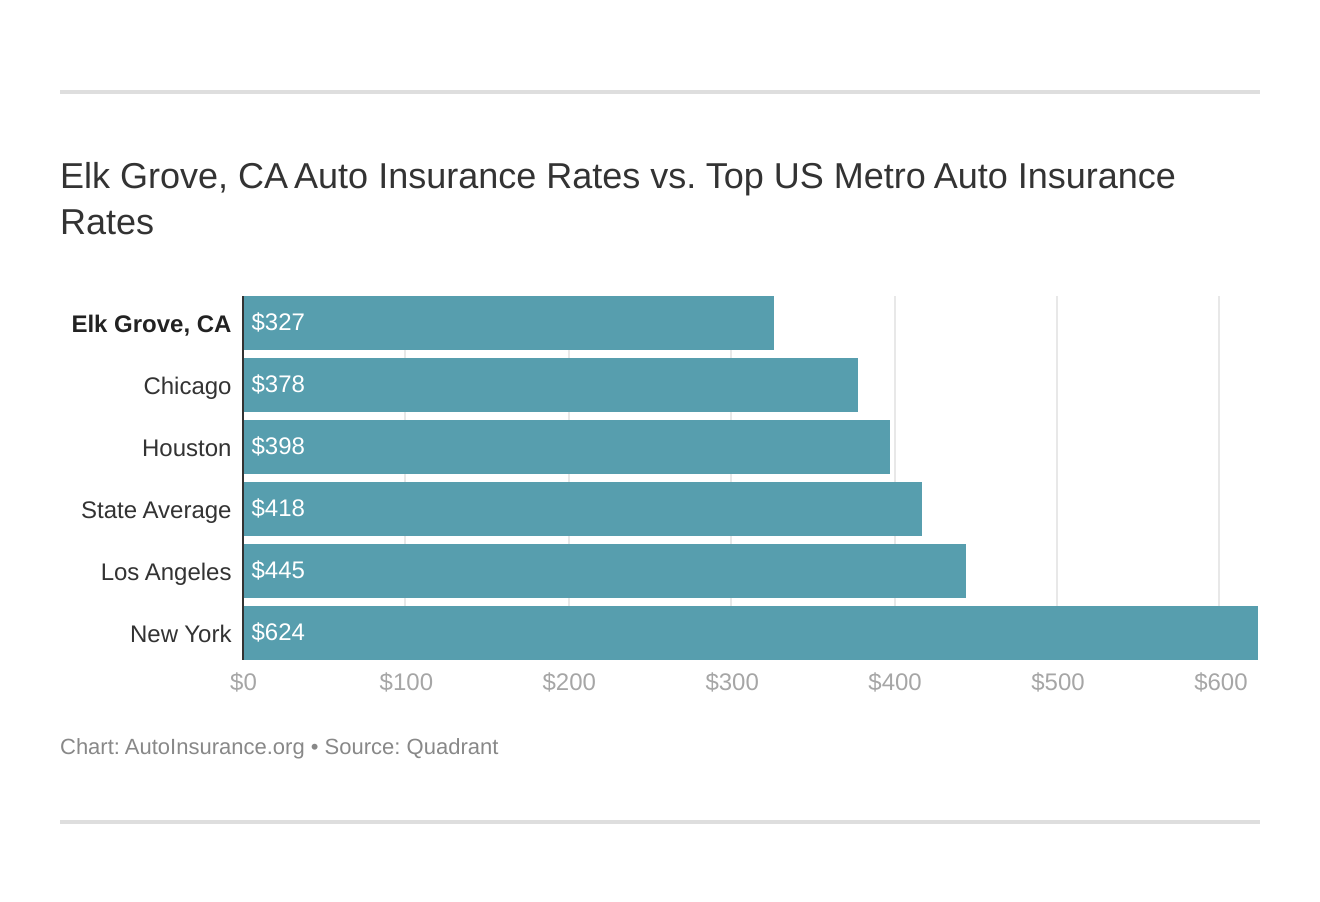 Elk Grove, CA Auto Insurance Rates vs. Top US Metro Auto Insurance Rates